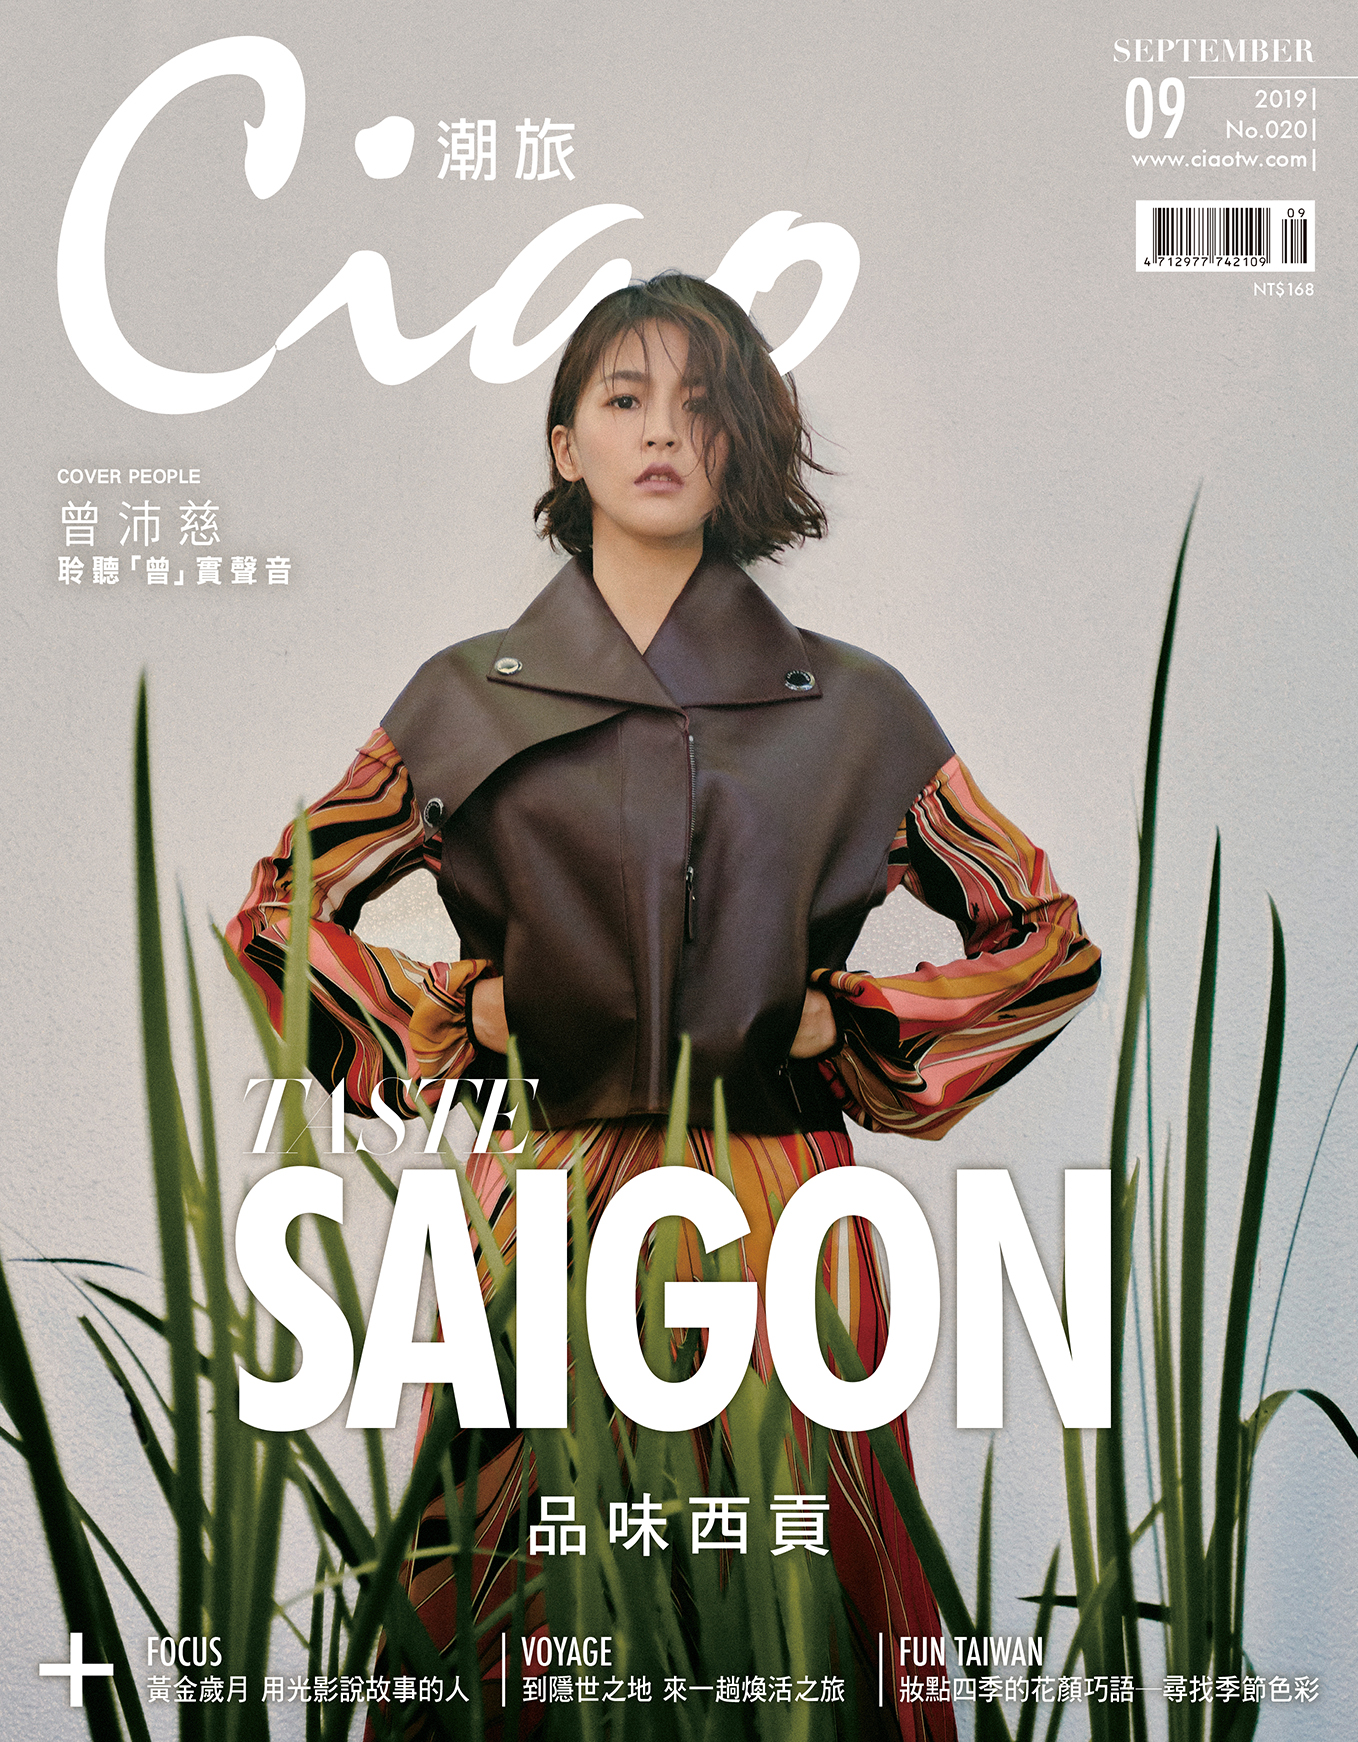 The Reverie Saigon | News | Ciao